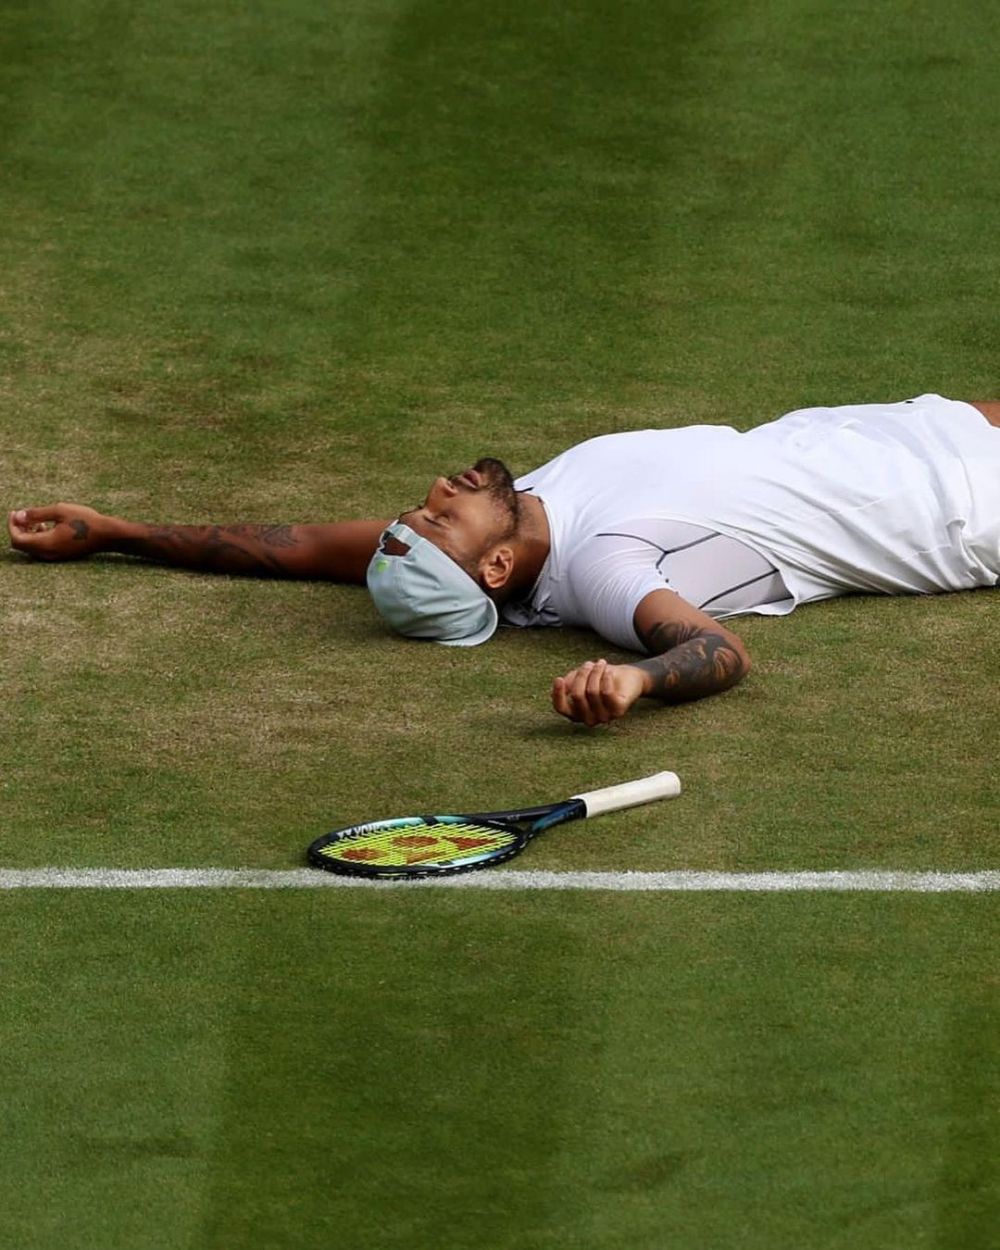 Nu îl recunoaște nimeni! Finalistul Wimbledon a postat o fotografie din copilărie și a devenit viral _15